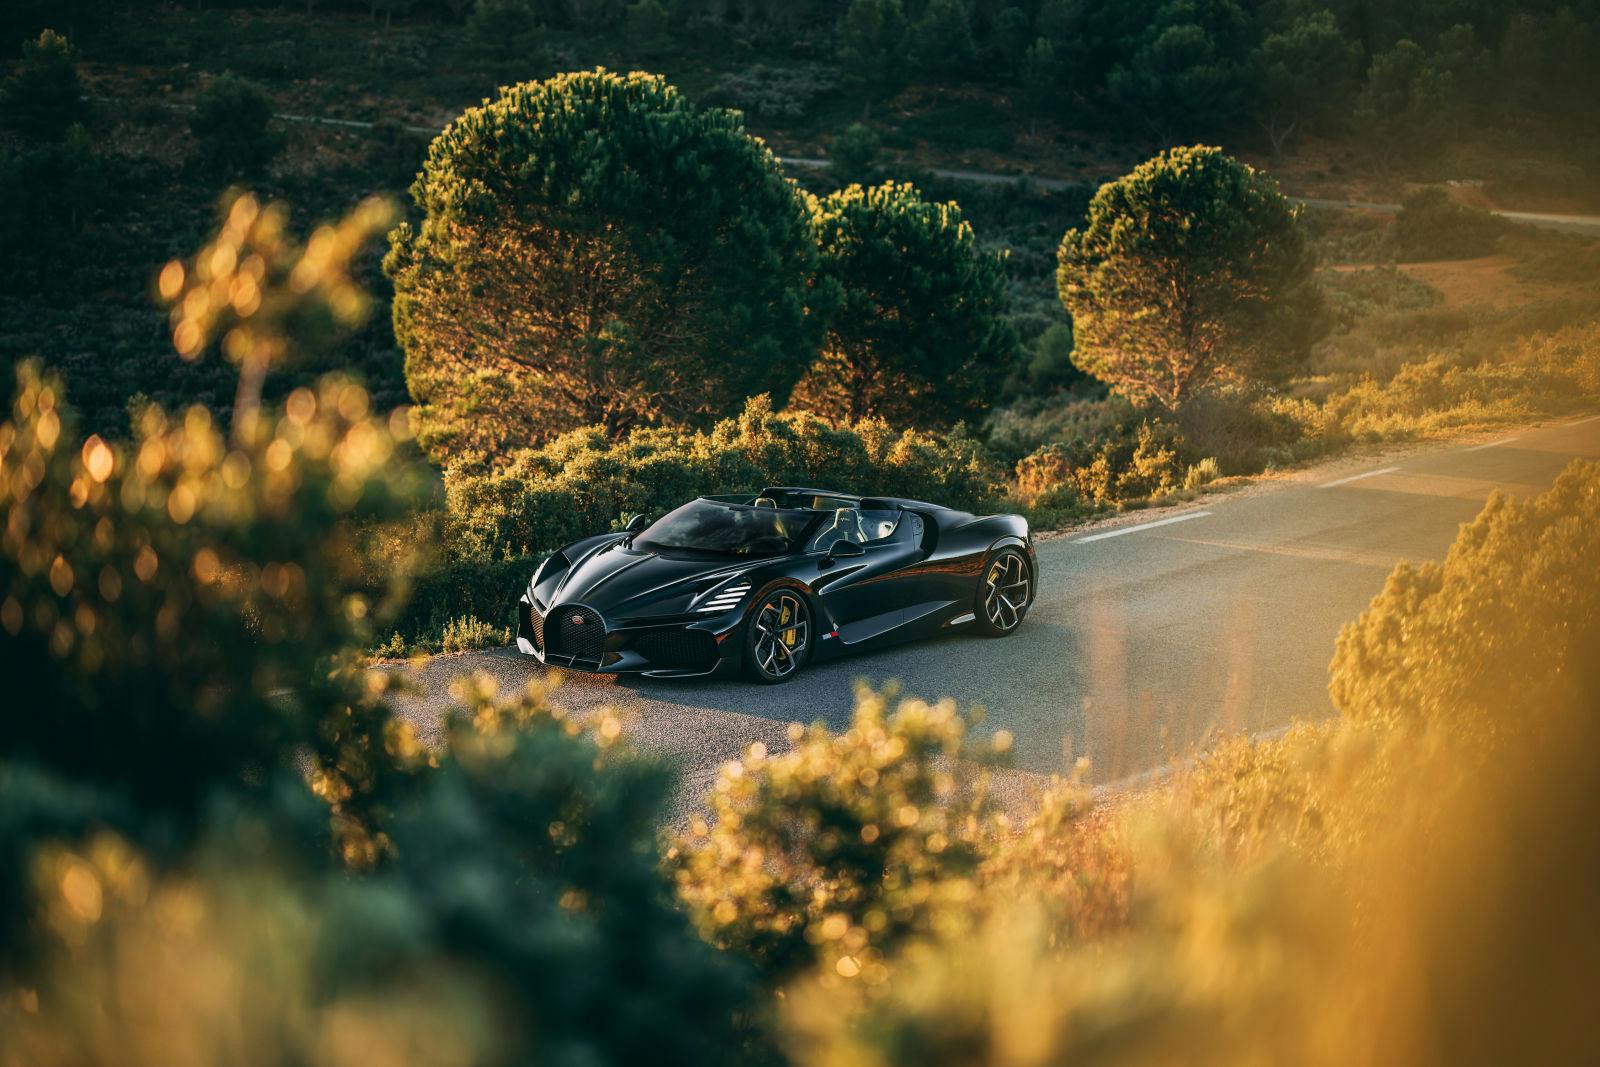 En Provence, la Bugatti W16 Mistral et le mistral se rencontrent pour ne faire qu’un.